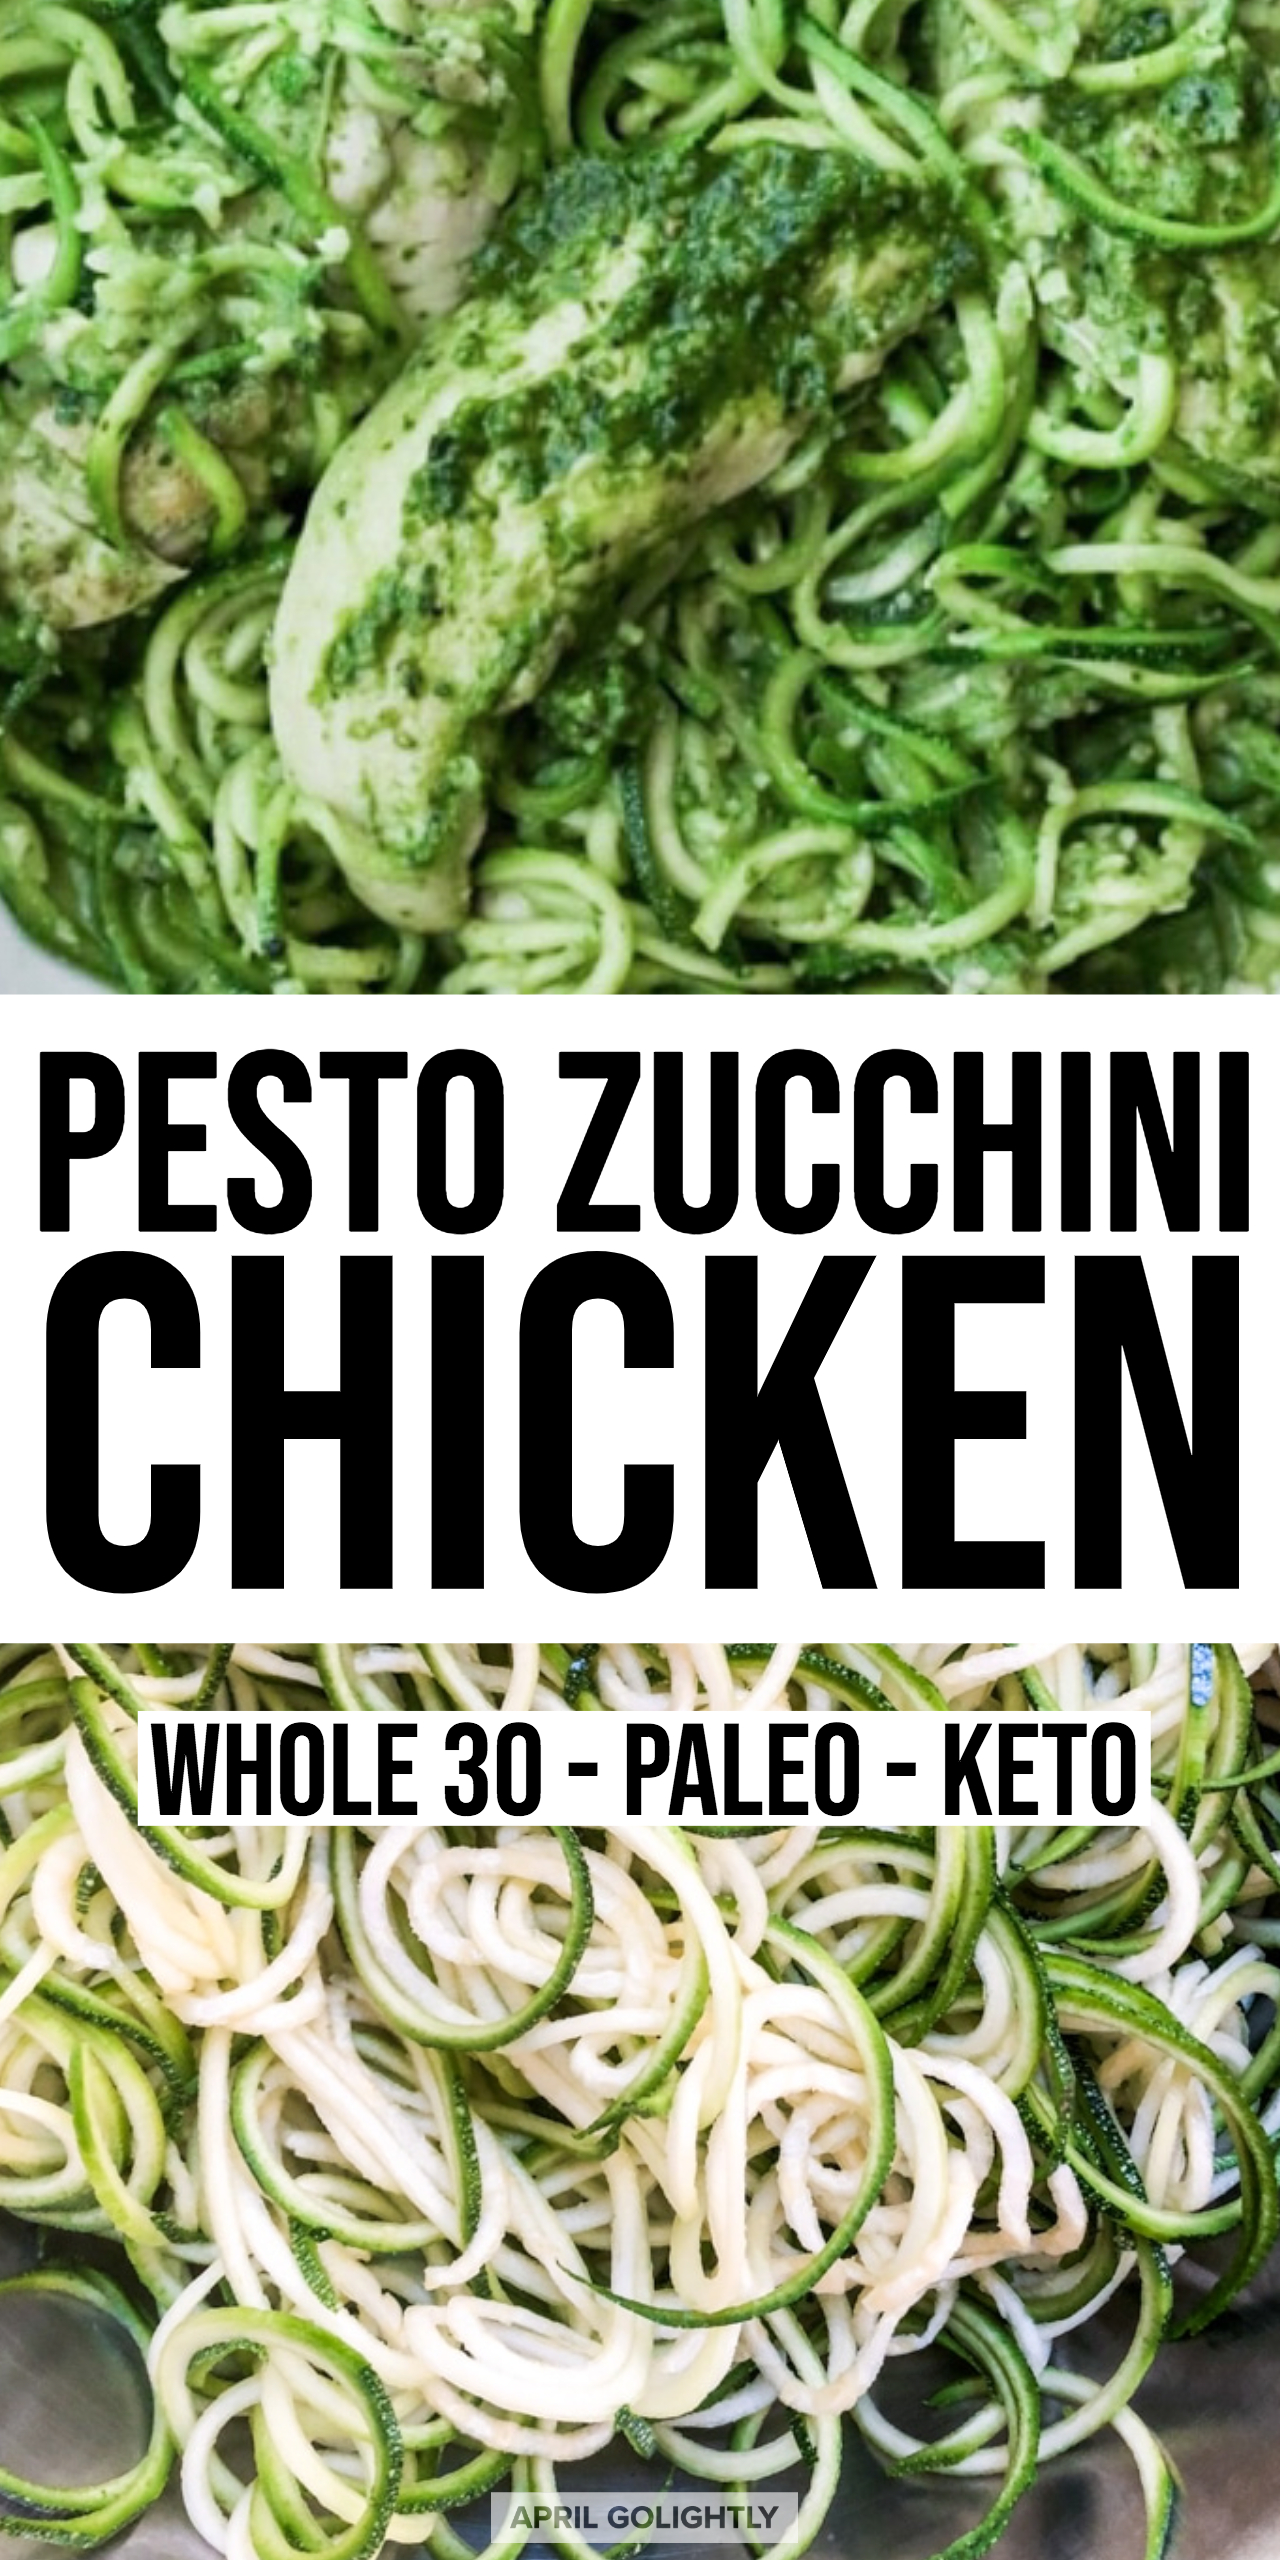 Pesto Zucchini Chicken dinner - Whole30, Paleo and Keto Recipe